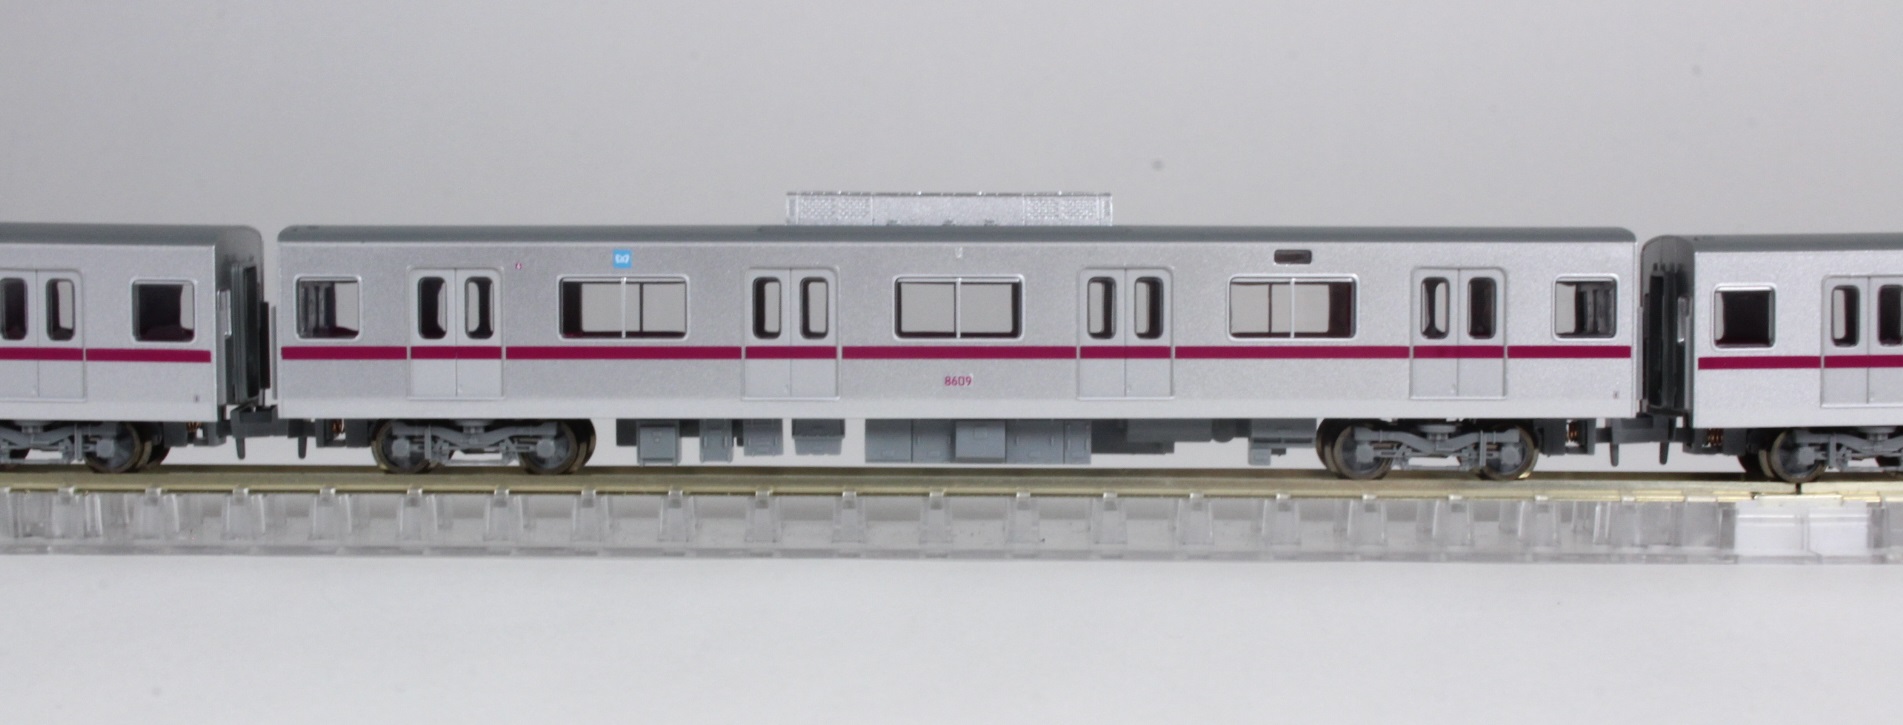 ホットディール マイクロエース Nゲージ 東京メトロ8000系 更新車 基本6両セット A3581 鉄道模型 電車 鉄道模型 